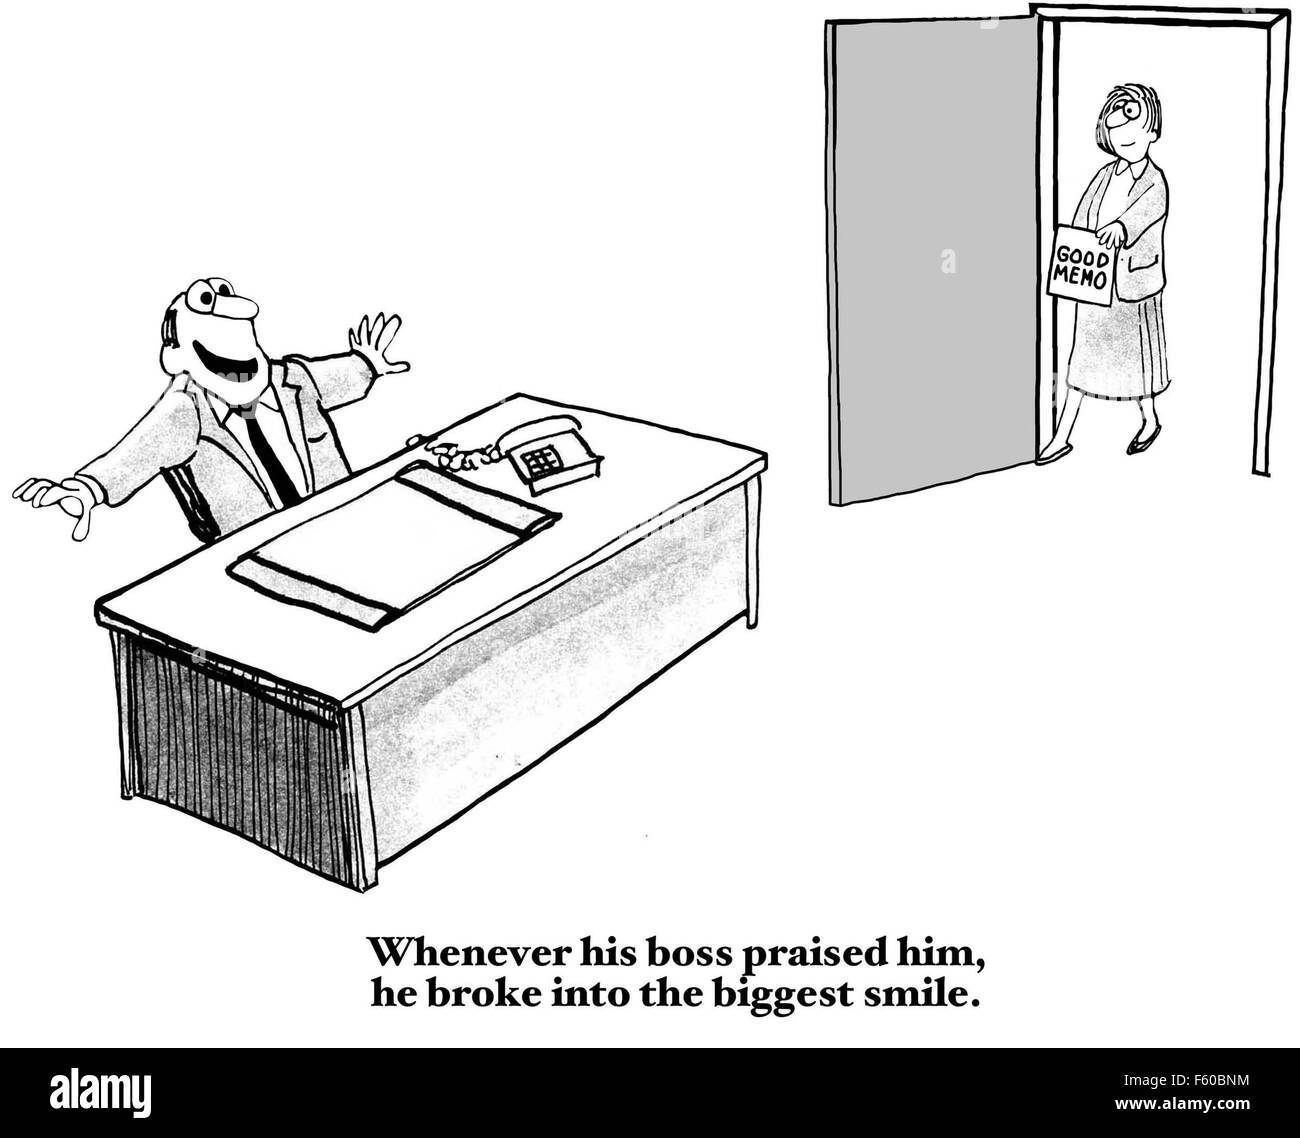 Business cartoon di boss dicendo "buona memo' e lavoratore, '... boss lodavano lui, ha fatto irruzione nella più grande possibile smile". Foto Stock